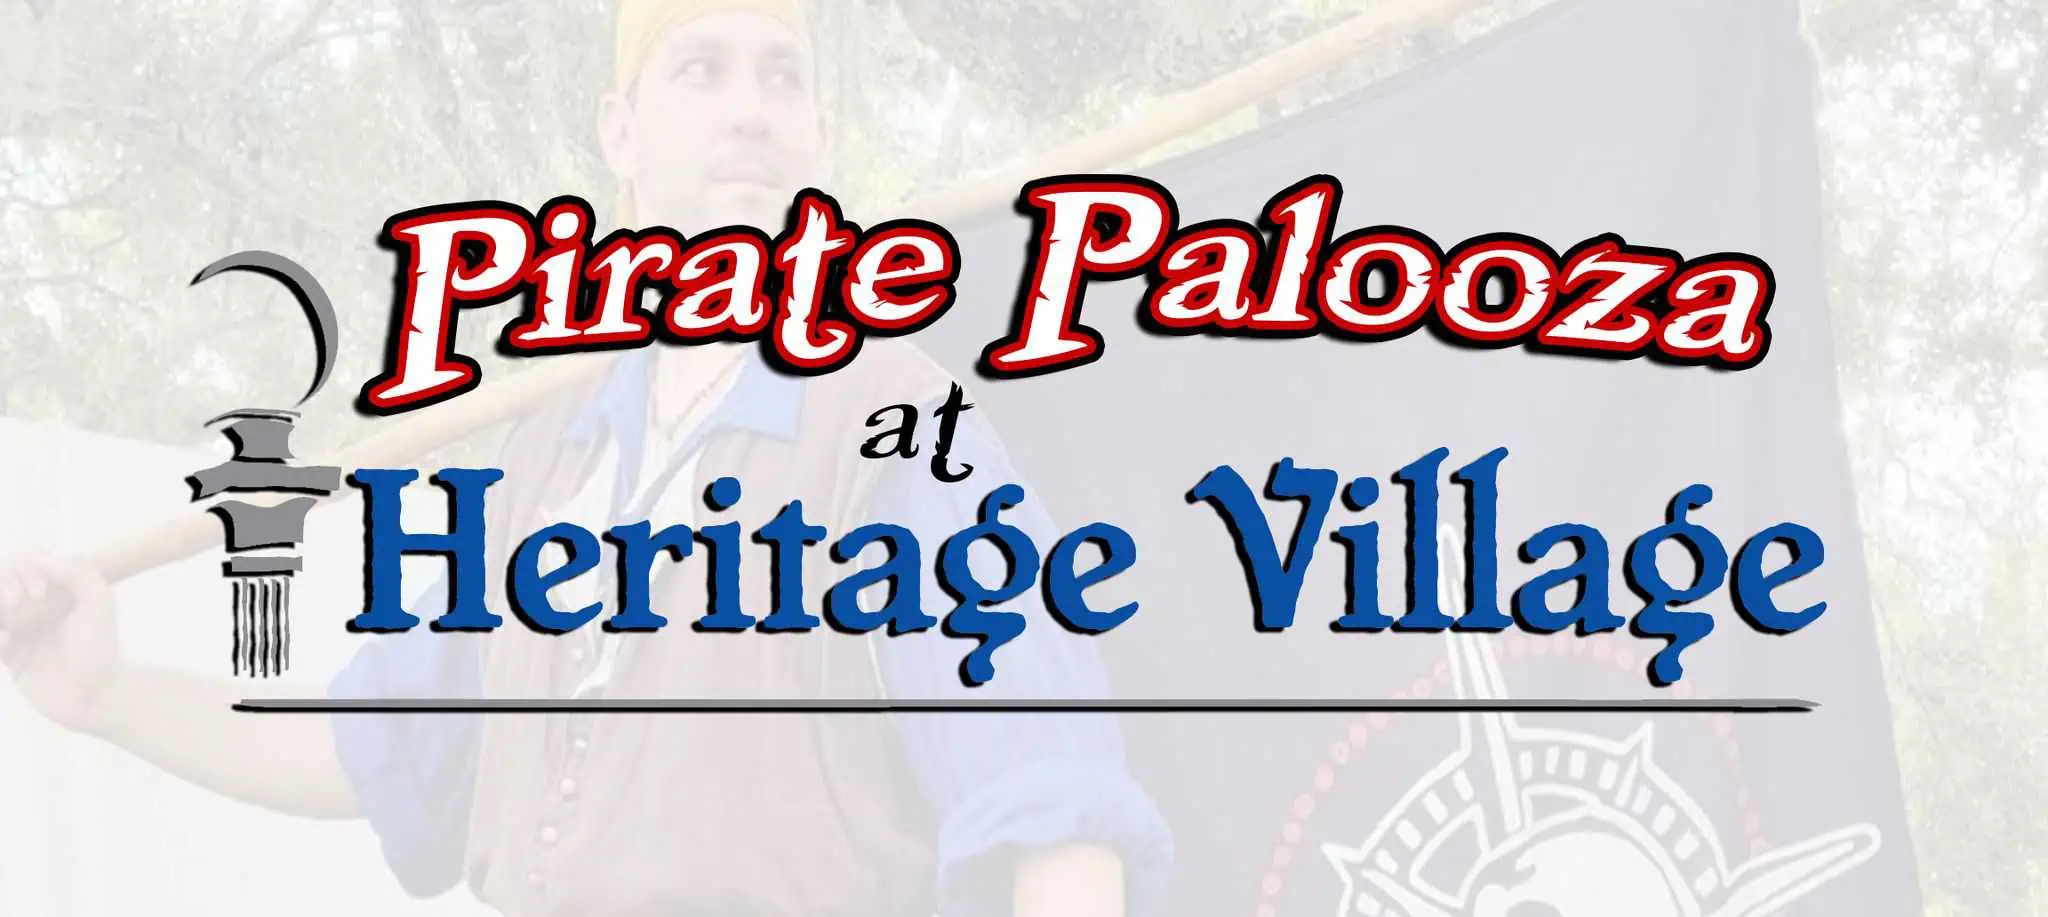 Pirate Palooza at Heritage Village